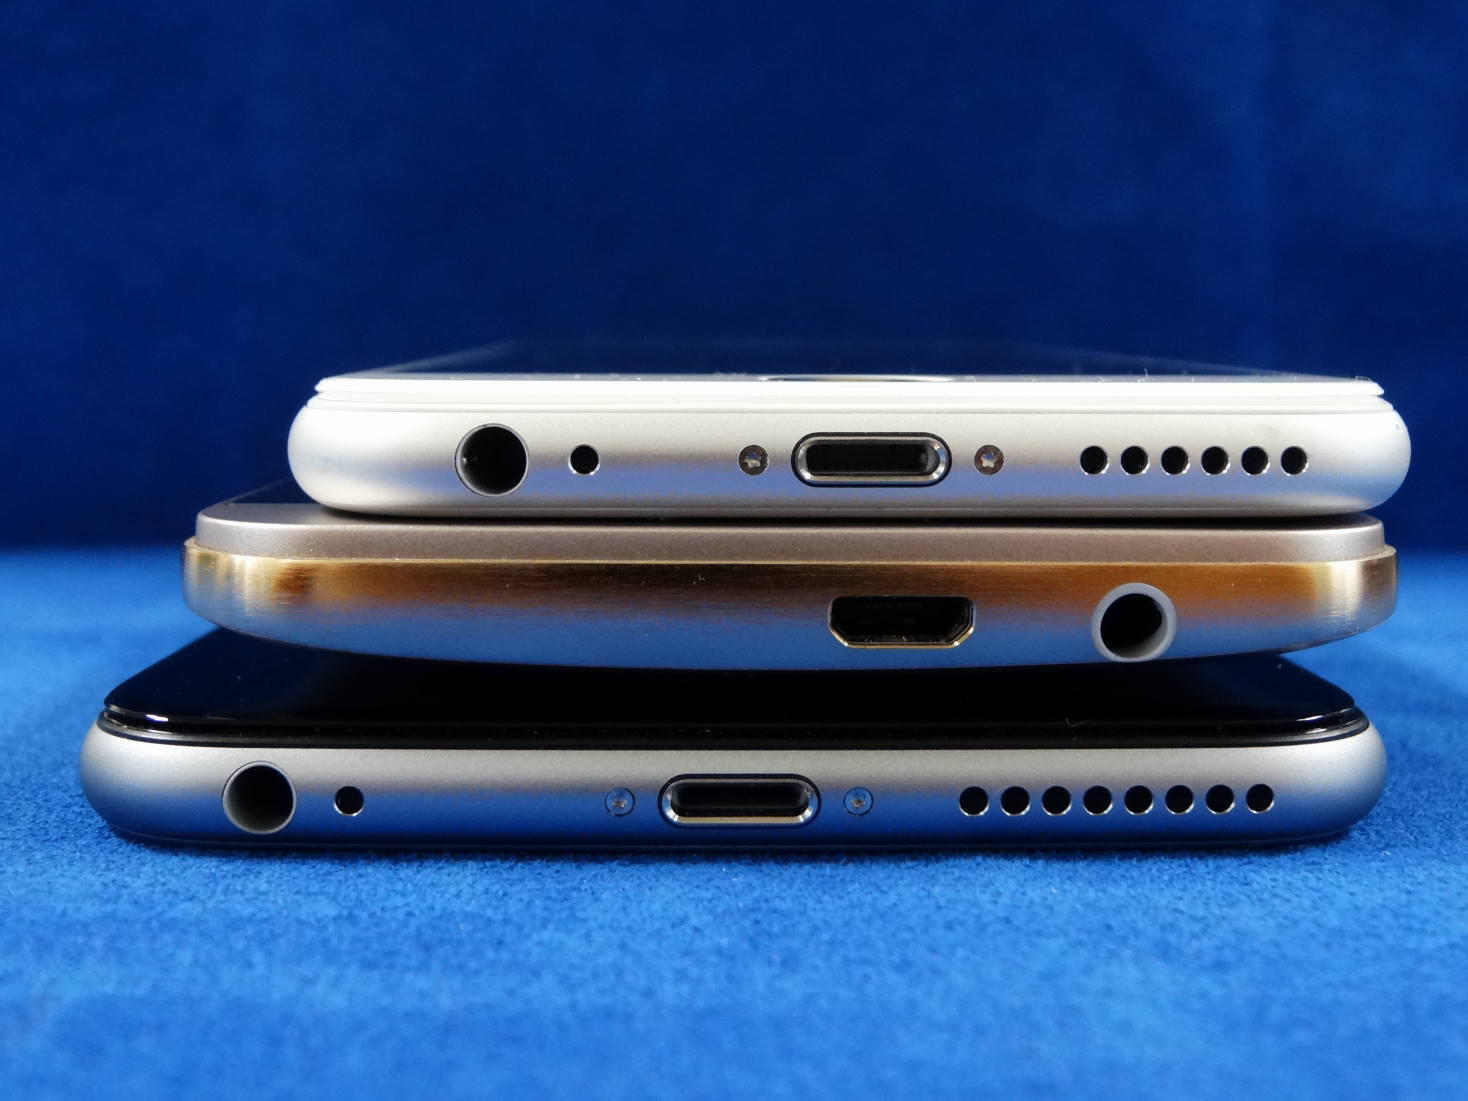 HTC One M9 Plus と iPhone 6 と iPhone 6 Plus 横幅比較